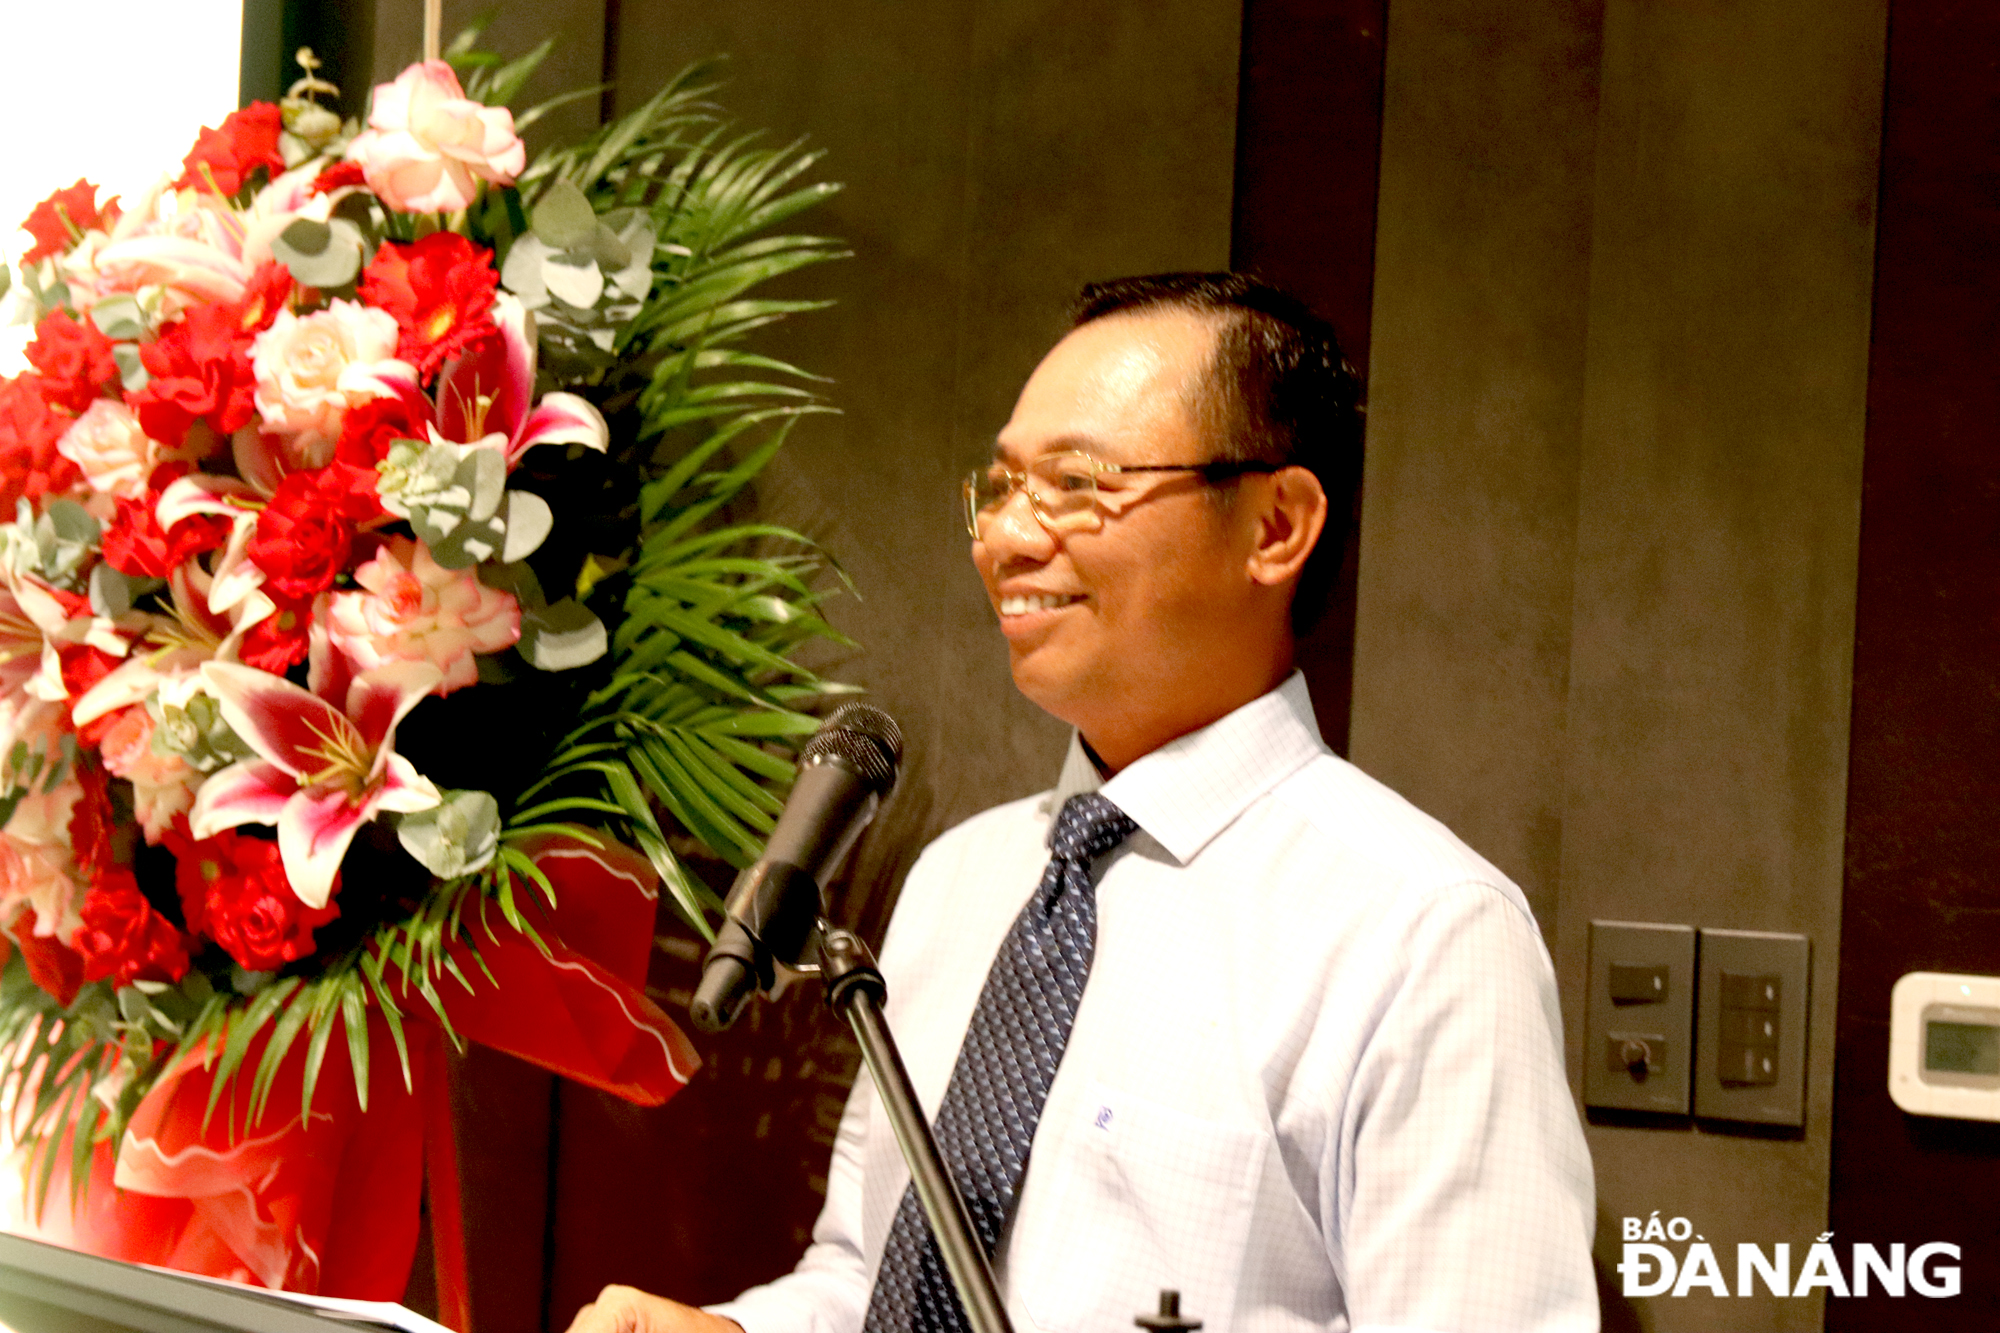 Bí thư Đảng ủy Khu Công nghệ và các Khu Công nghiệp Đà Nẵng Vũ Quang Hùng phát biểu chúc mừng tại buổi lễ. Ảnh: T. HUY